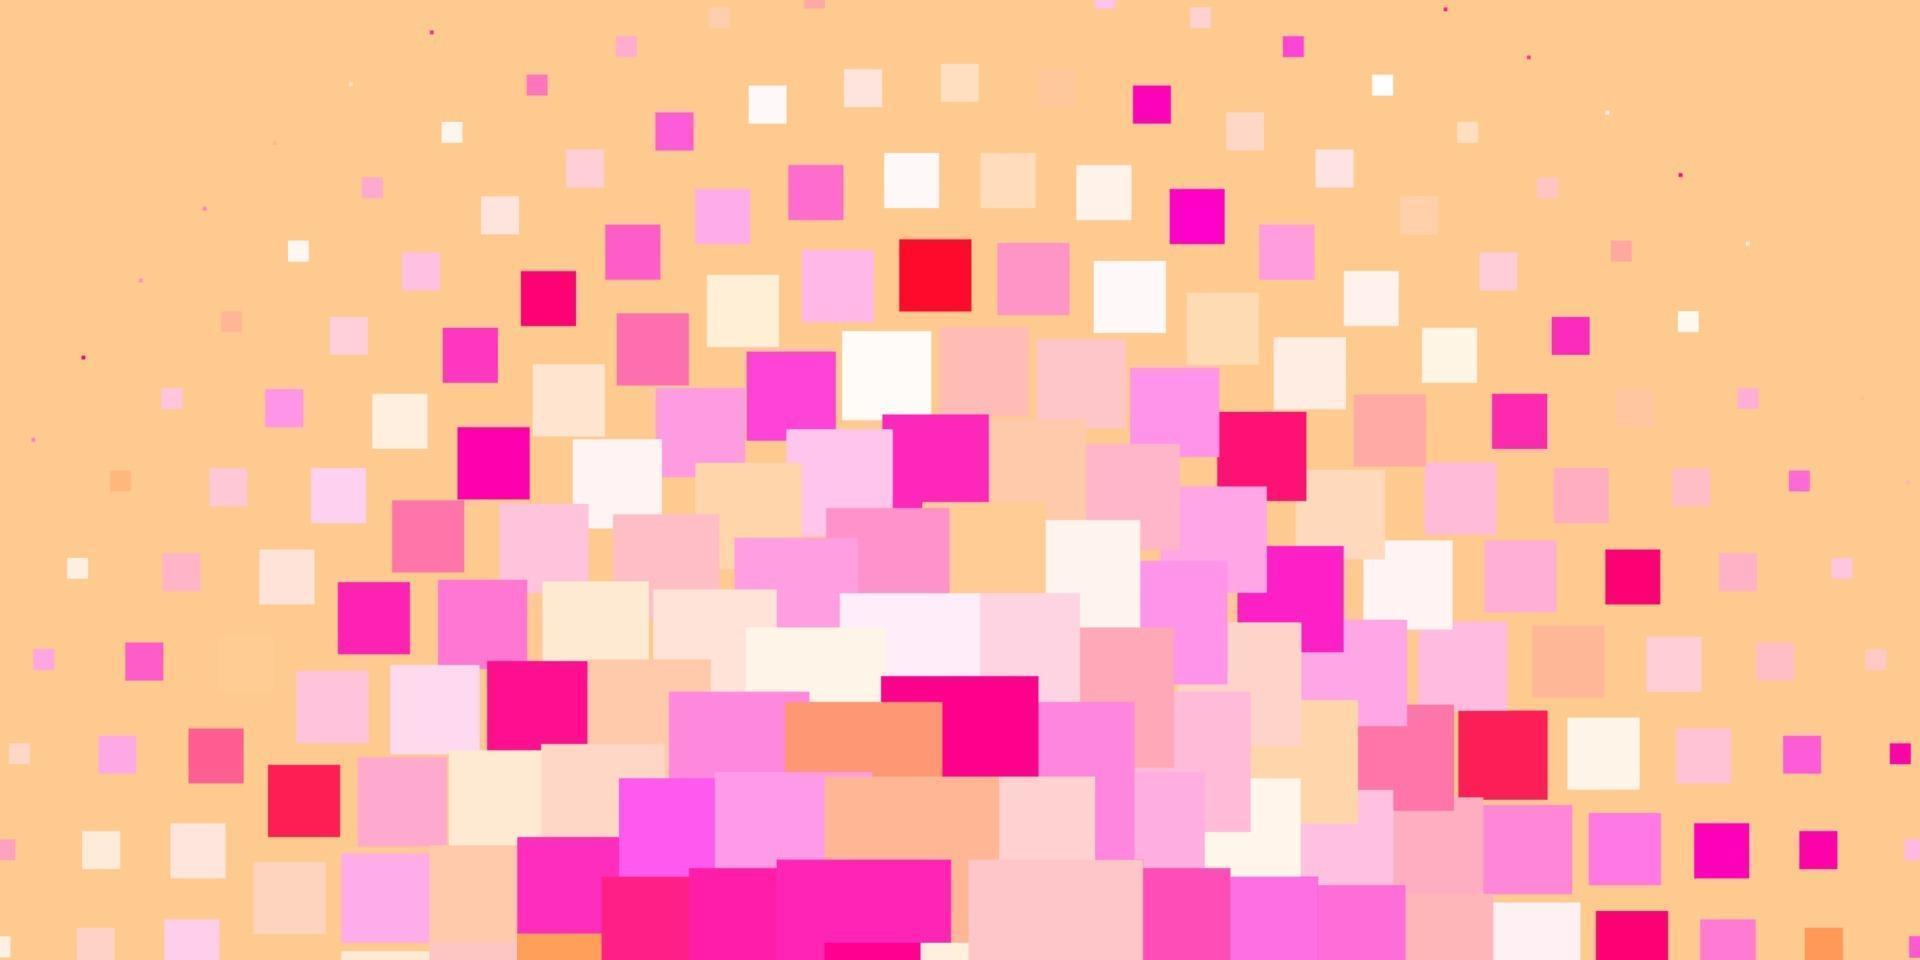 modello vettoriale rosa chiaro in stile quadrato.